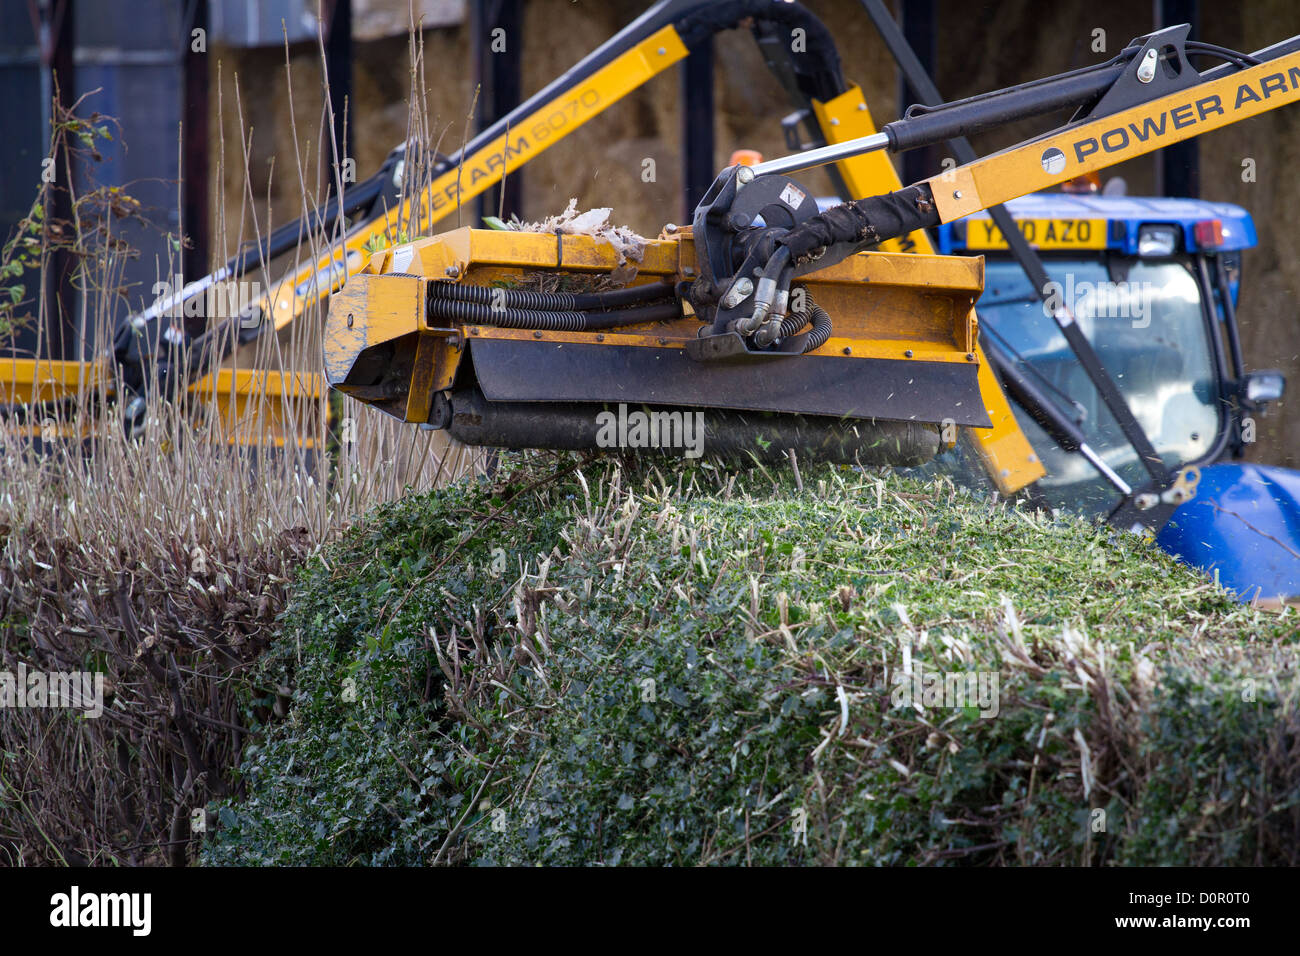 Hedge-Wartung zu Ackerland Biodiversity  paar Traktoren schneiden Hecken in North Yorkshire Dales, Bedale, Großbritannien Stockfoto